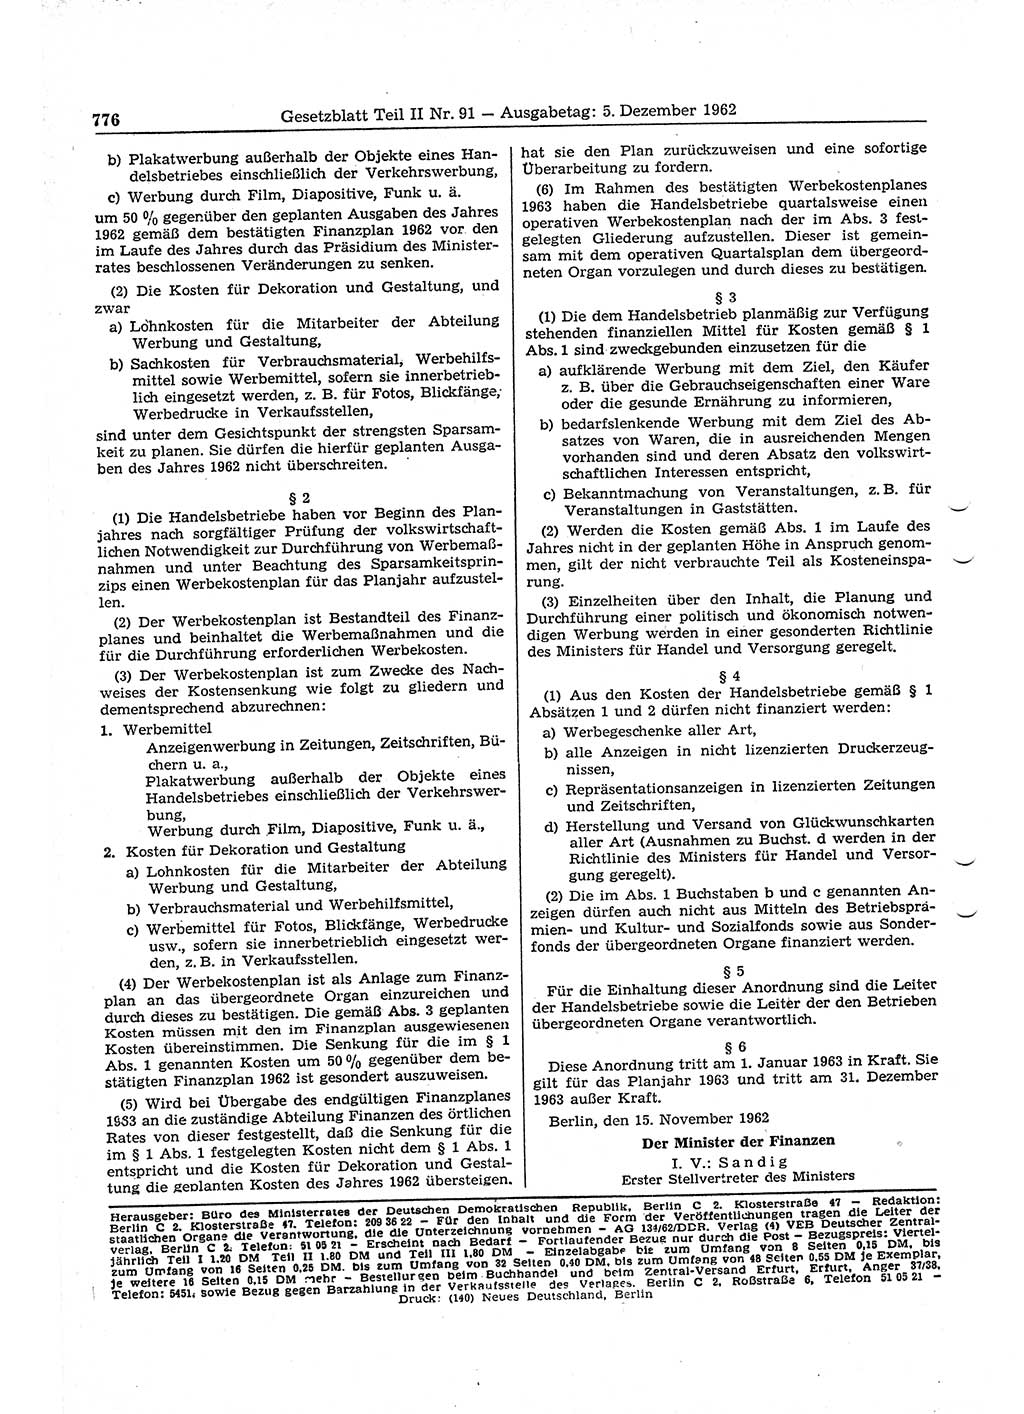 Gesetzblatt (GBl.) der Deutschen Demokratischen Republik (DDR) Teil ⅠⅠ 1962, Seite 776 (GBl. DDR ⅠⅠ 1962, S. 776)